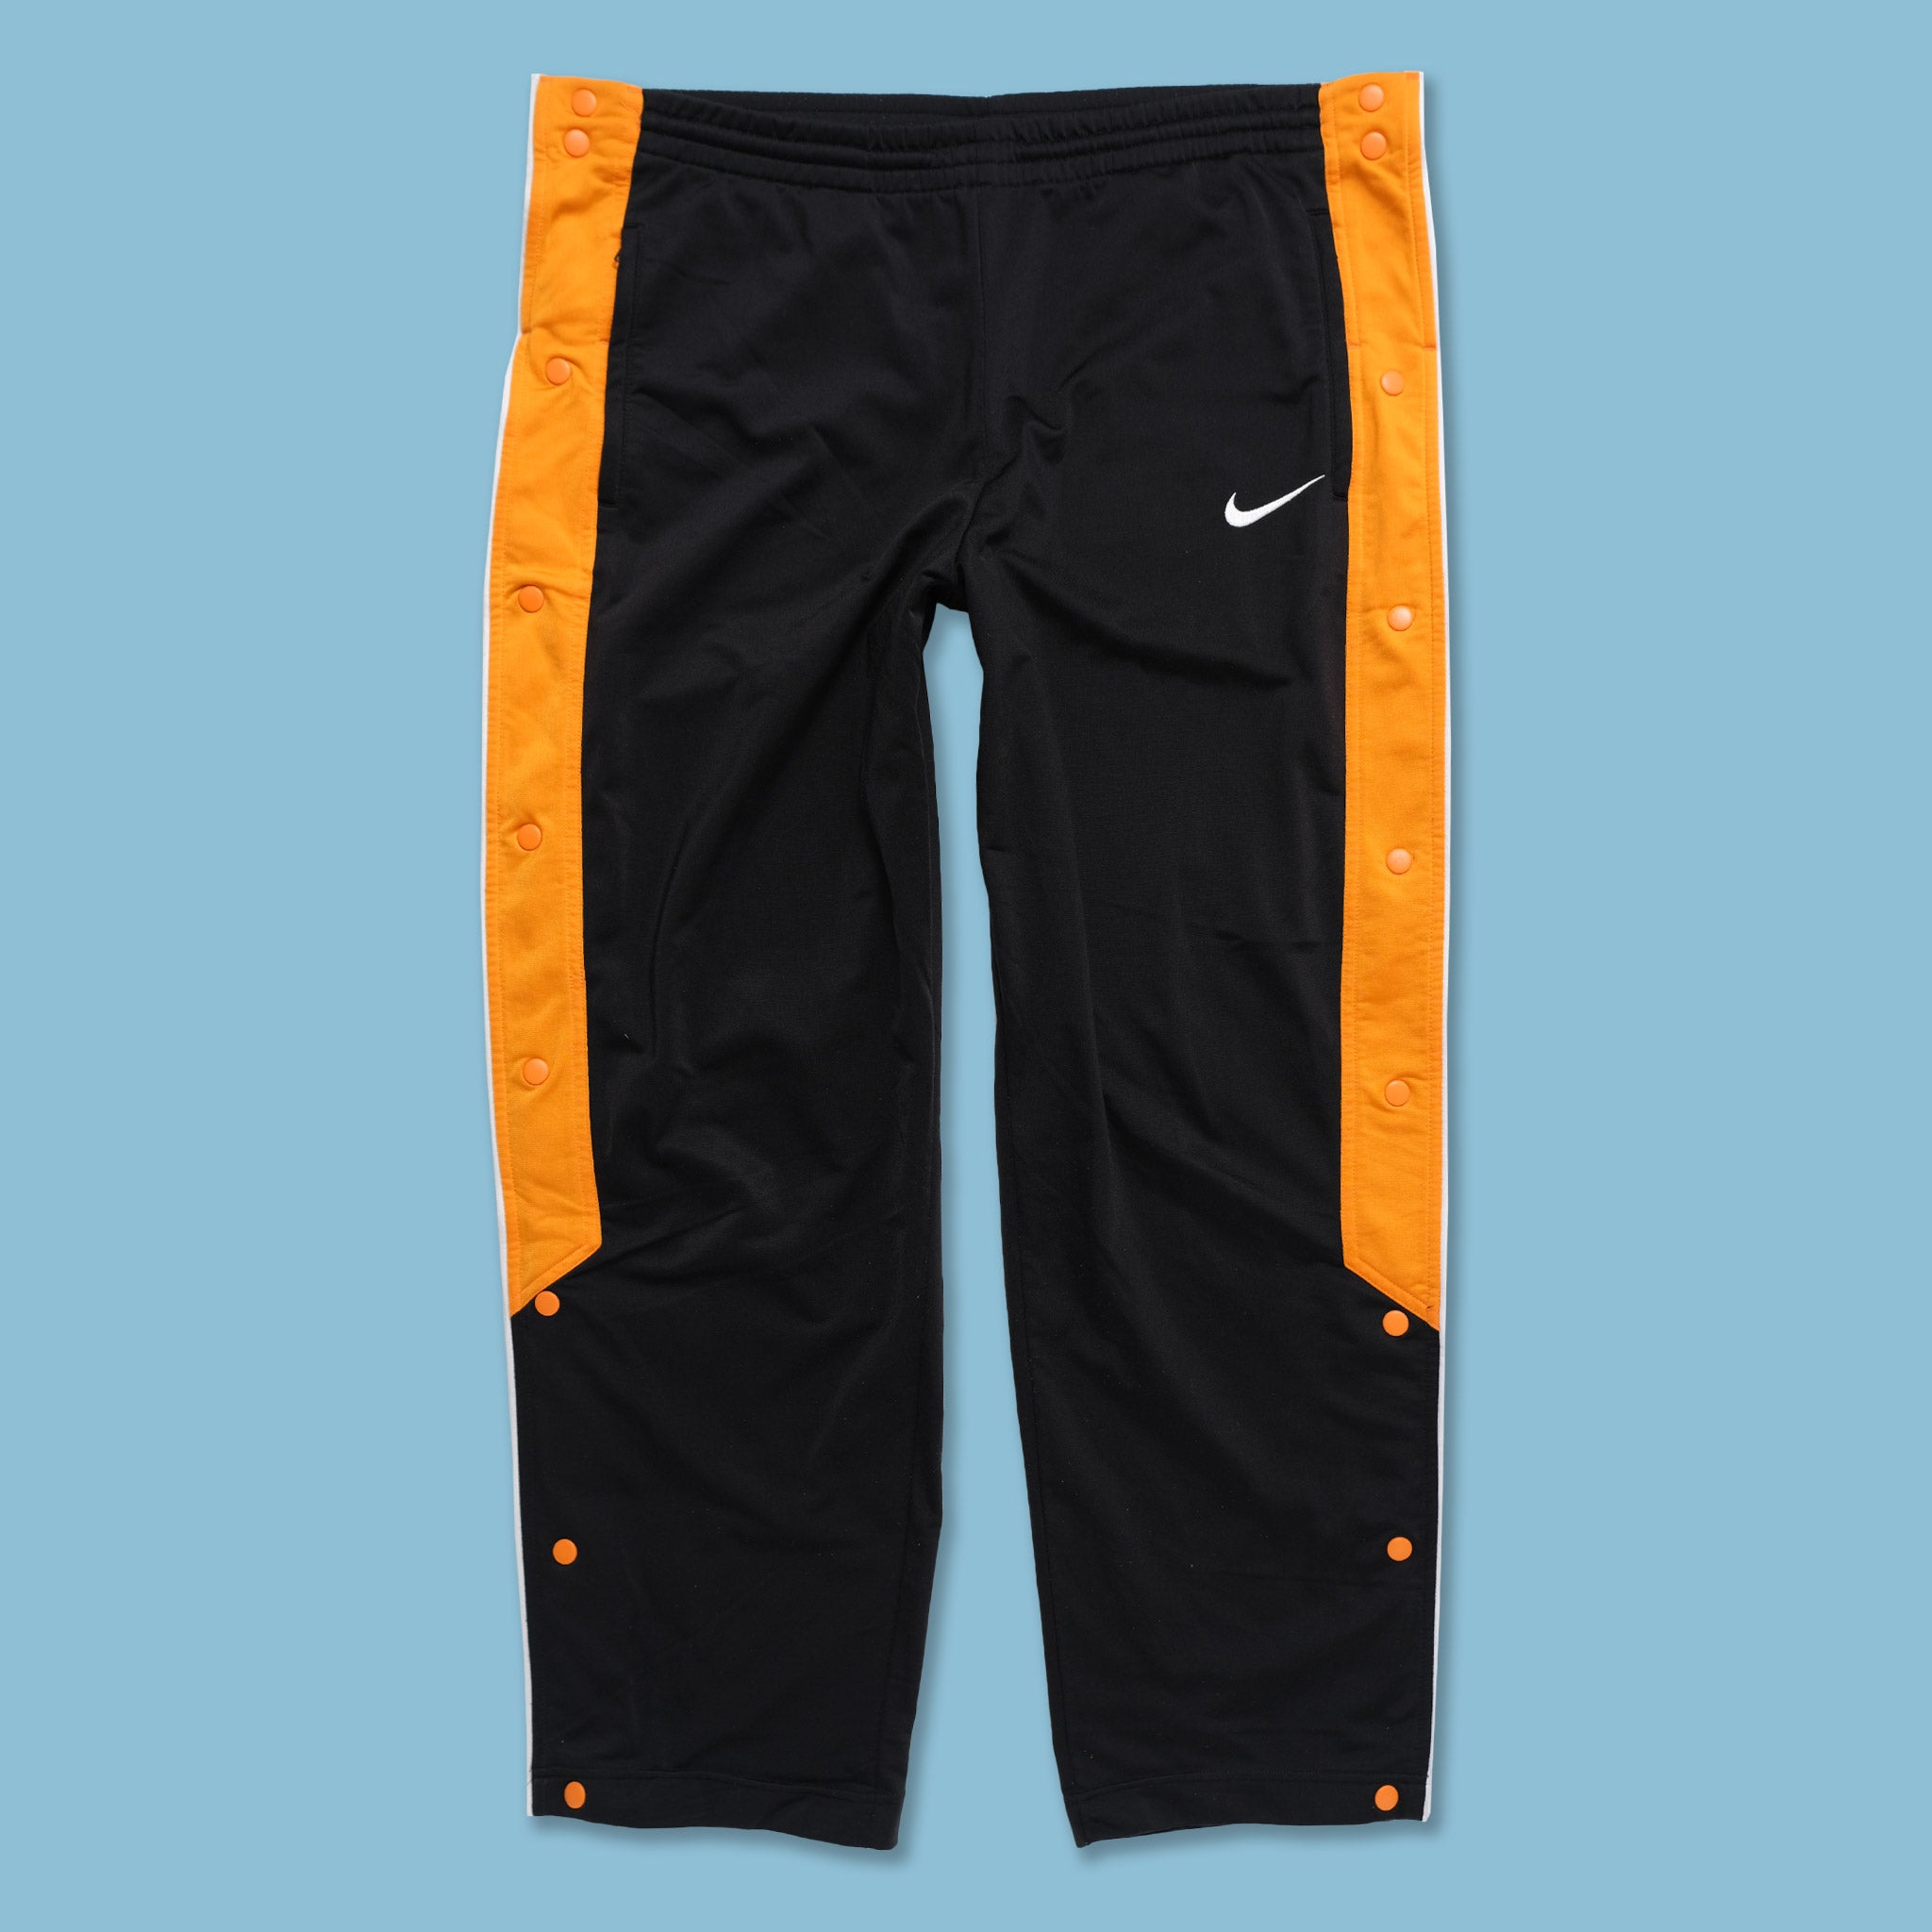 Vintage Nike Navy And Orange Track Pants 